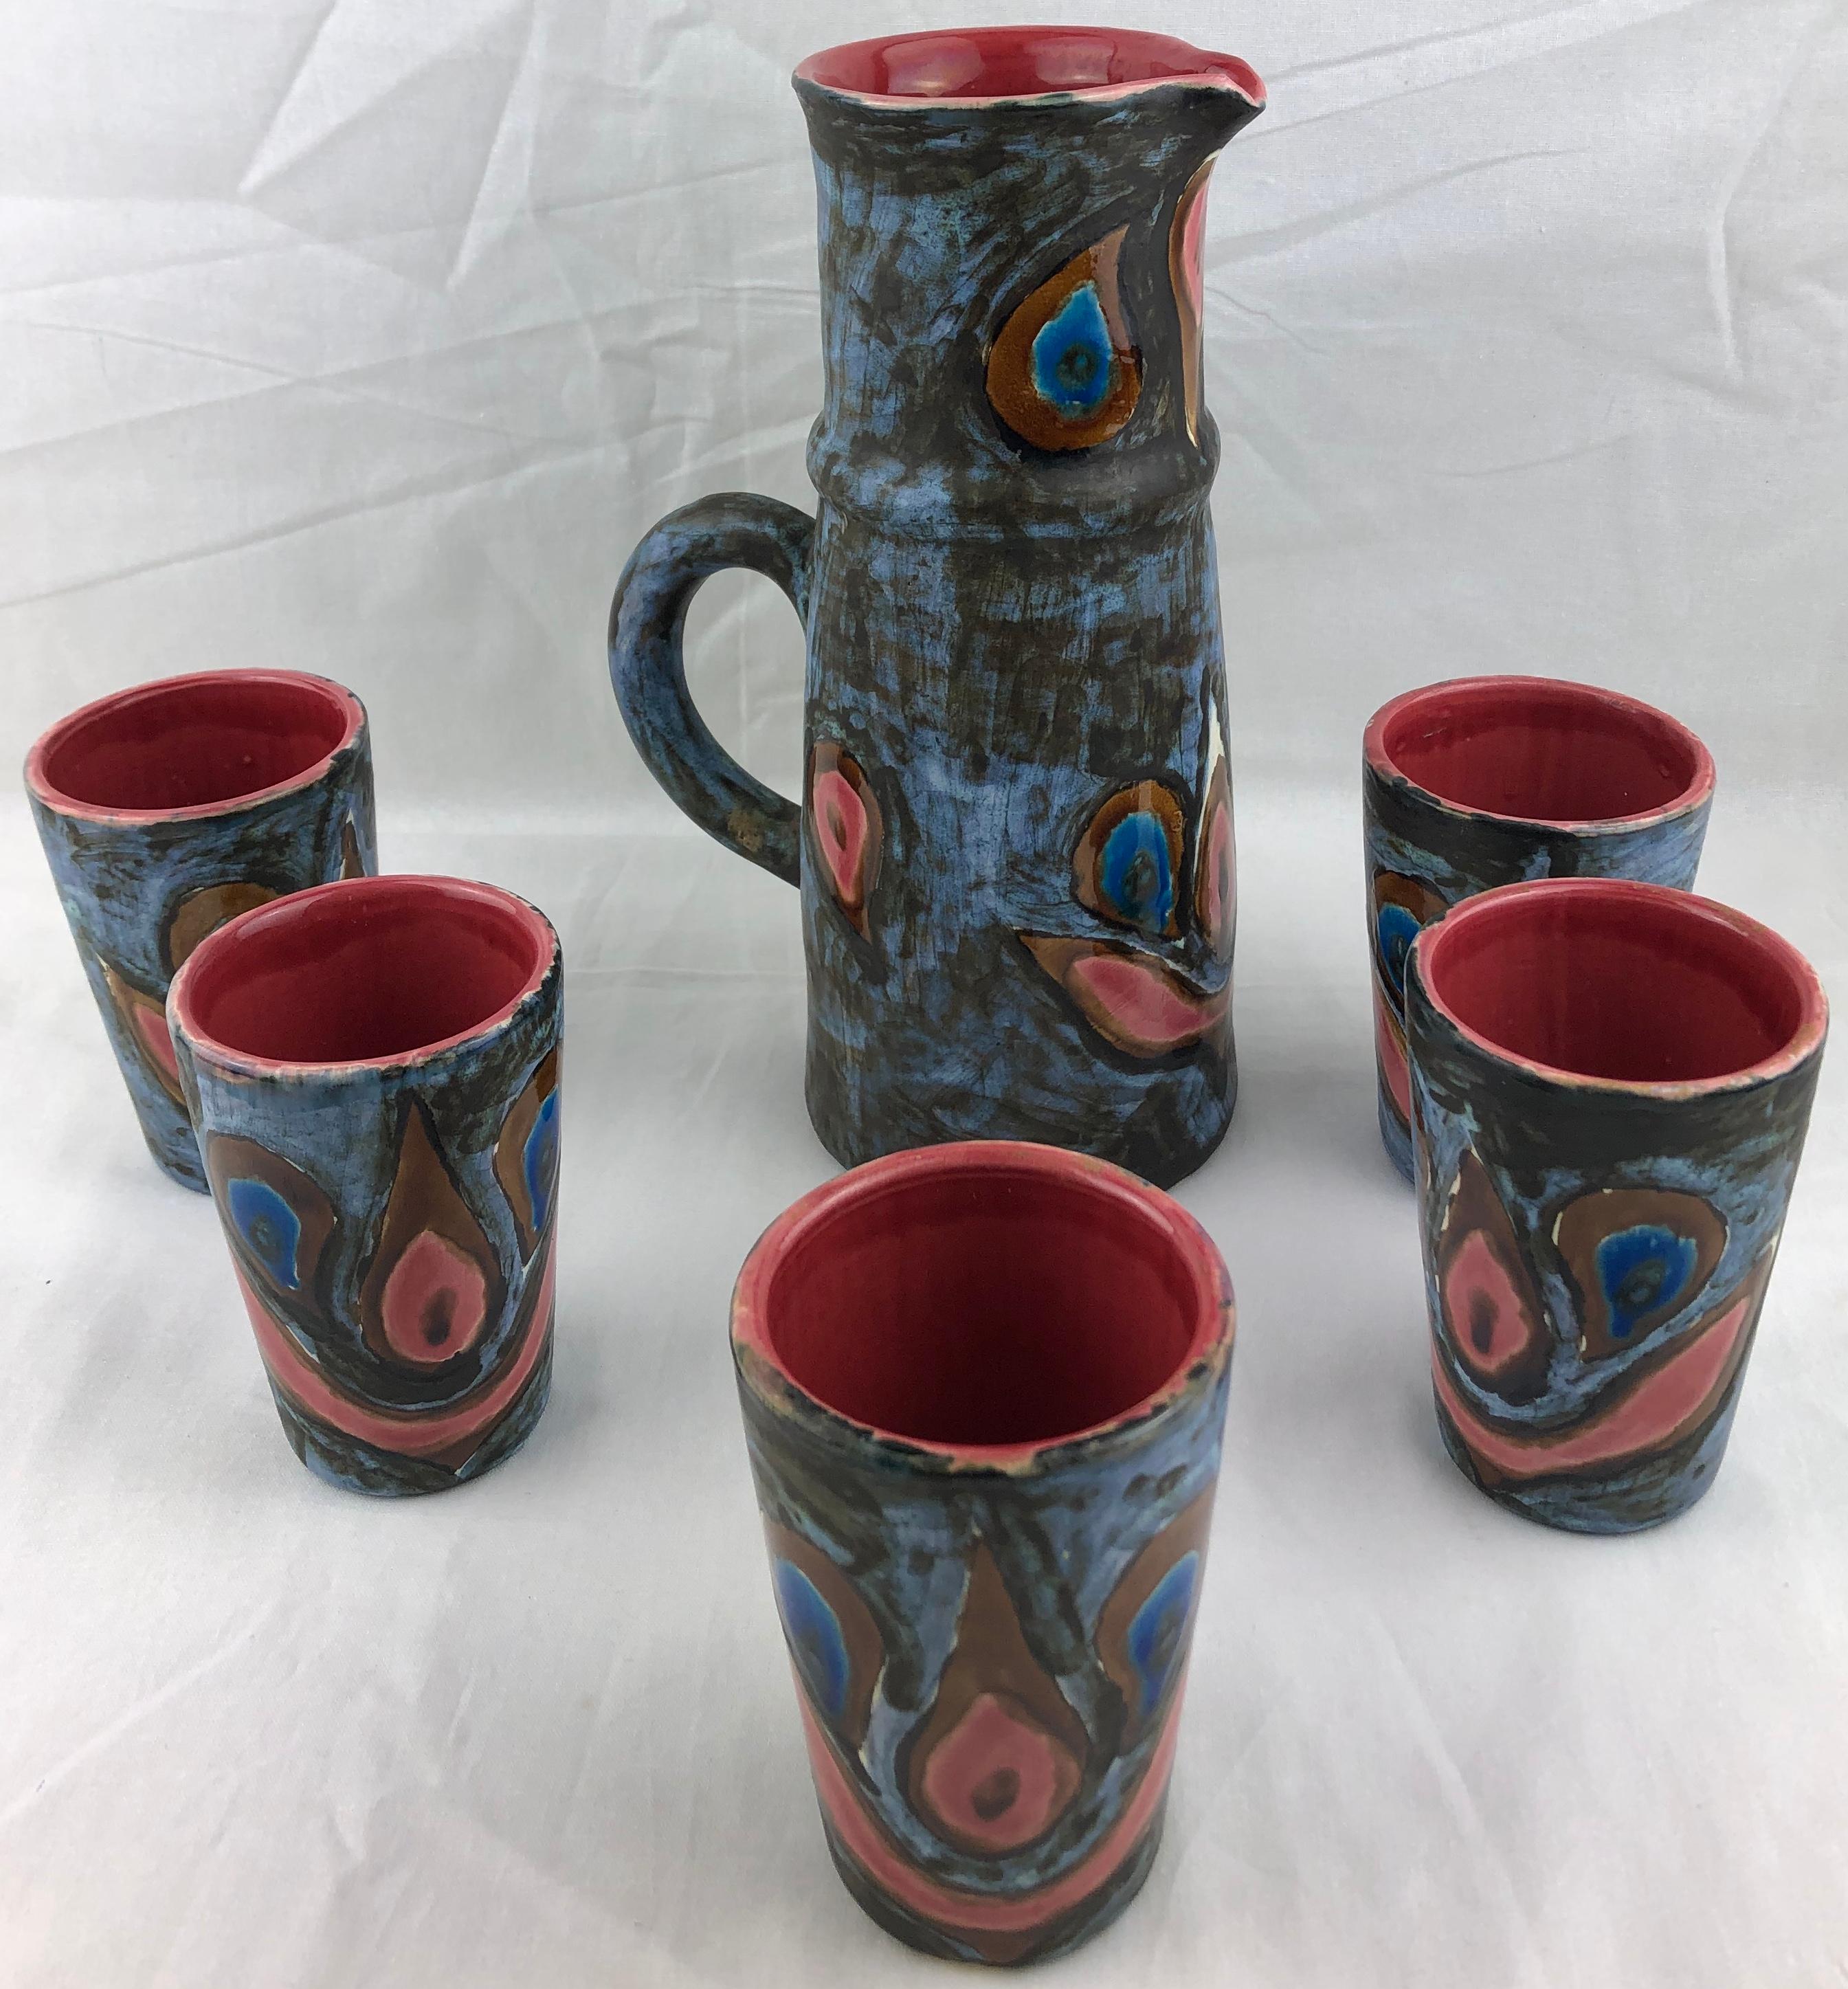 Pichet et cinq tasses en céramique magnifiquement travaillés et aux couleurs étonnantes.
Fabriqué à la main à Vallauris, en France, selon des techniques de poterie traditionnelles, vers le milieu des années 1950. 
Le plus souvent utilisé comme